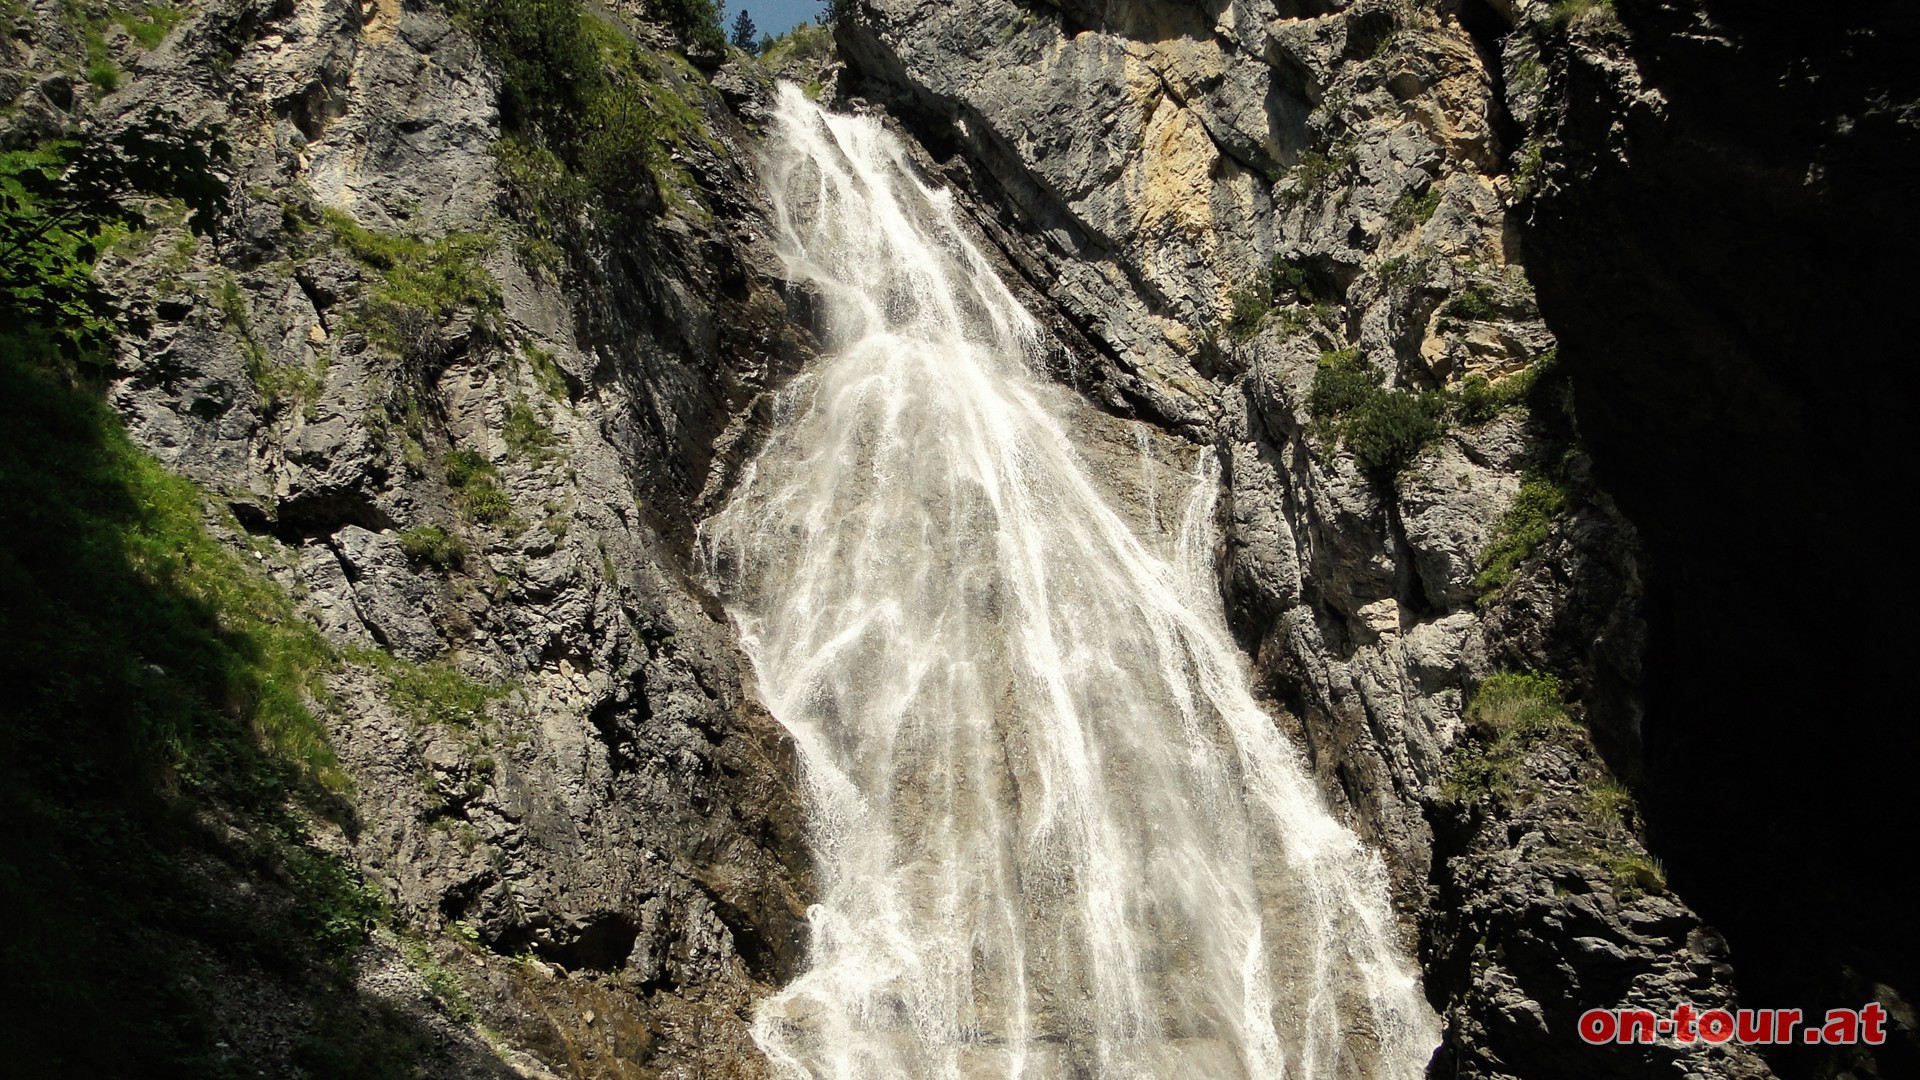 Der kurze, aber lohnenswerte Abstecher, zum 3 Min. entfernten Wasserfall, kann getrost beim Abstieg angetreten werden (bessere Lichtverhltnisse).